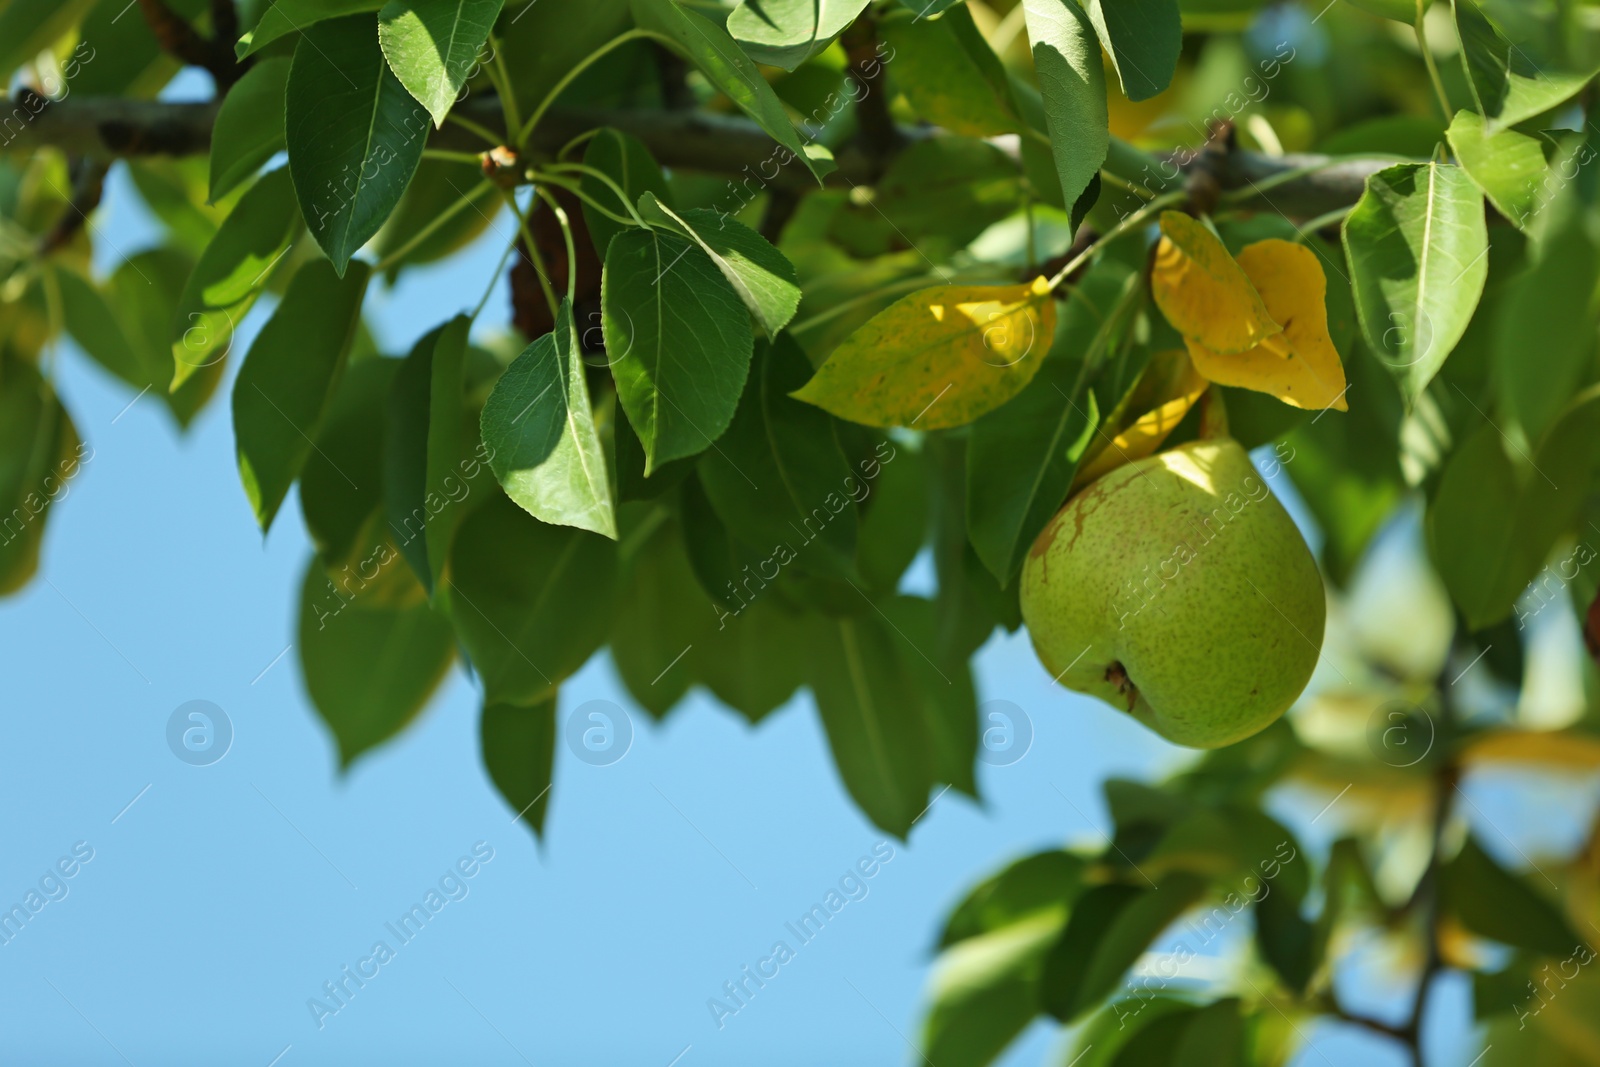 Photo of Ripe juicy pear on tree branch in garden